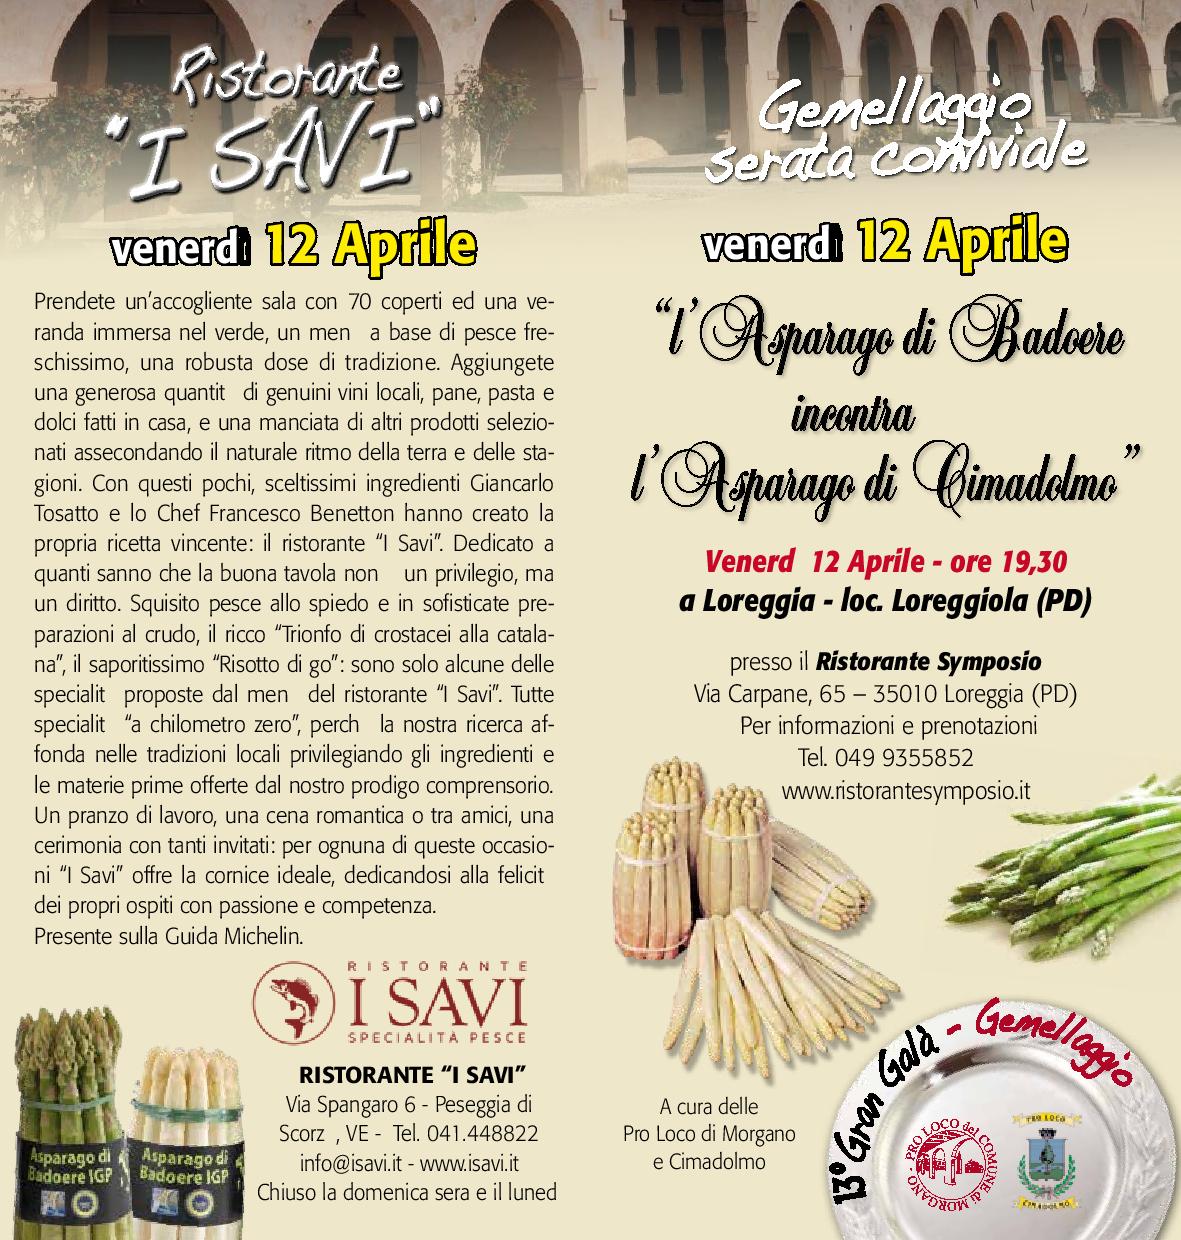 itinerari gastronomici presso i ristoranti del territorio dell'asparago I.G.P di Badoere